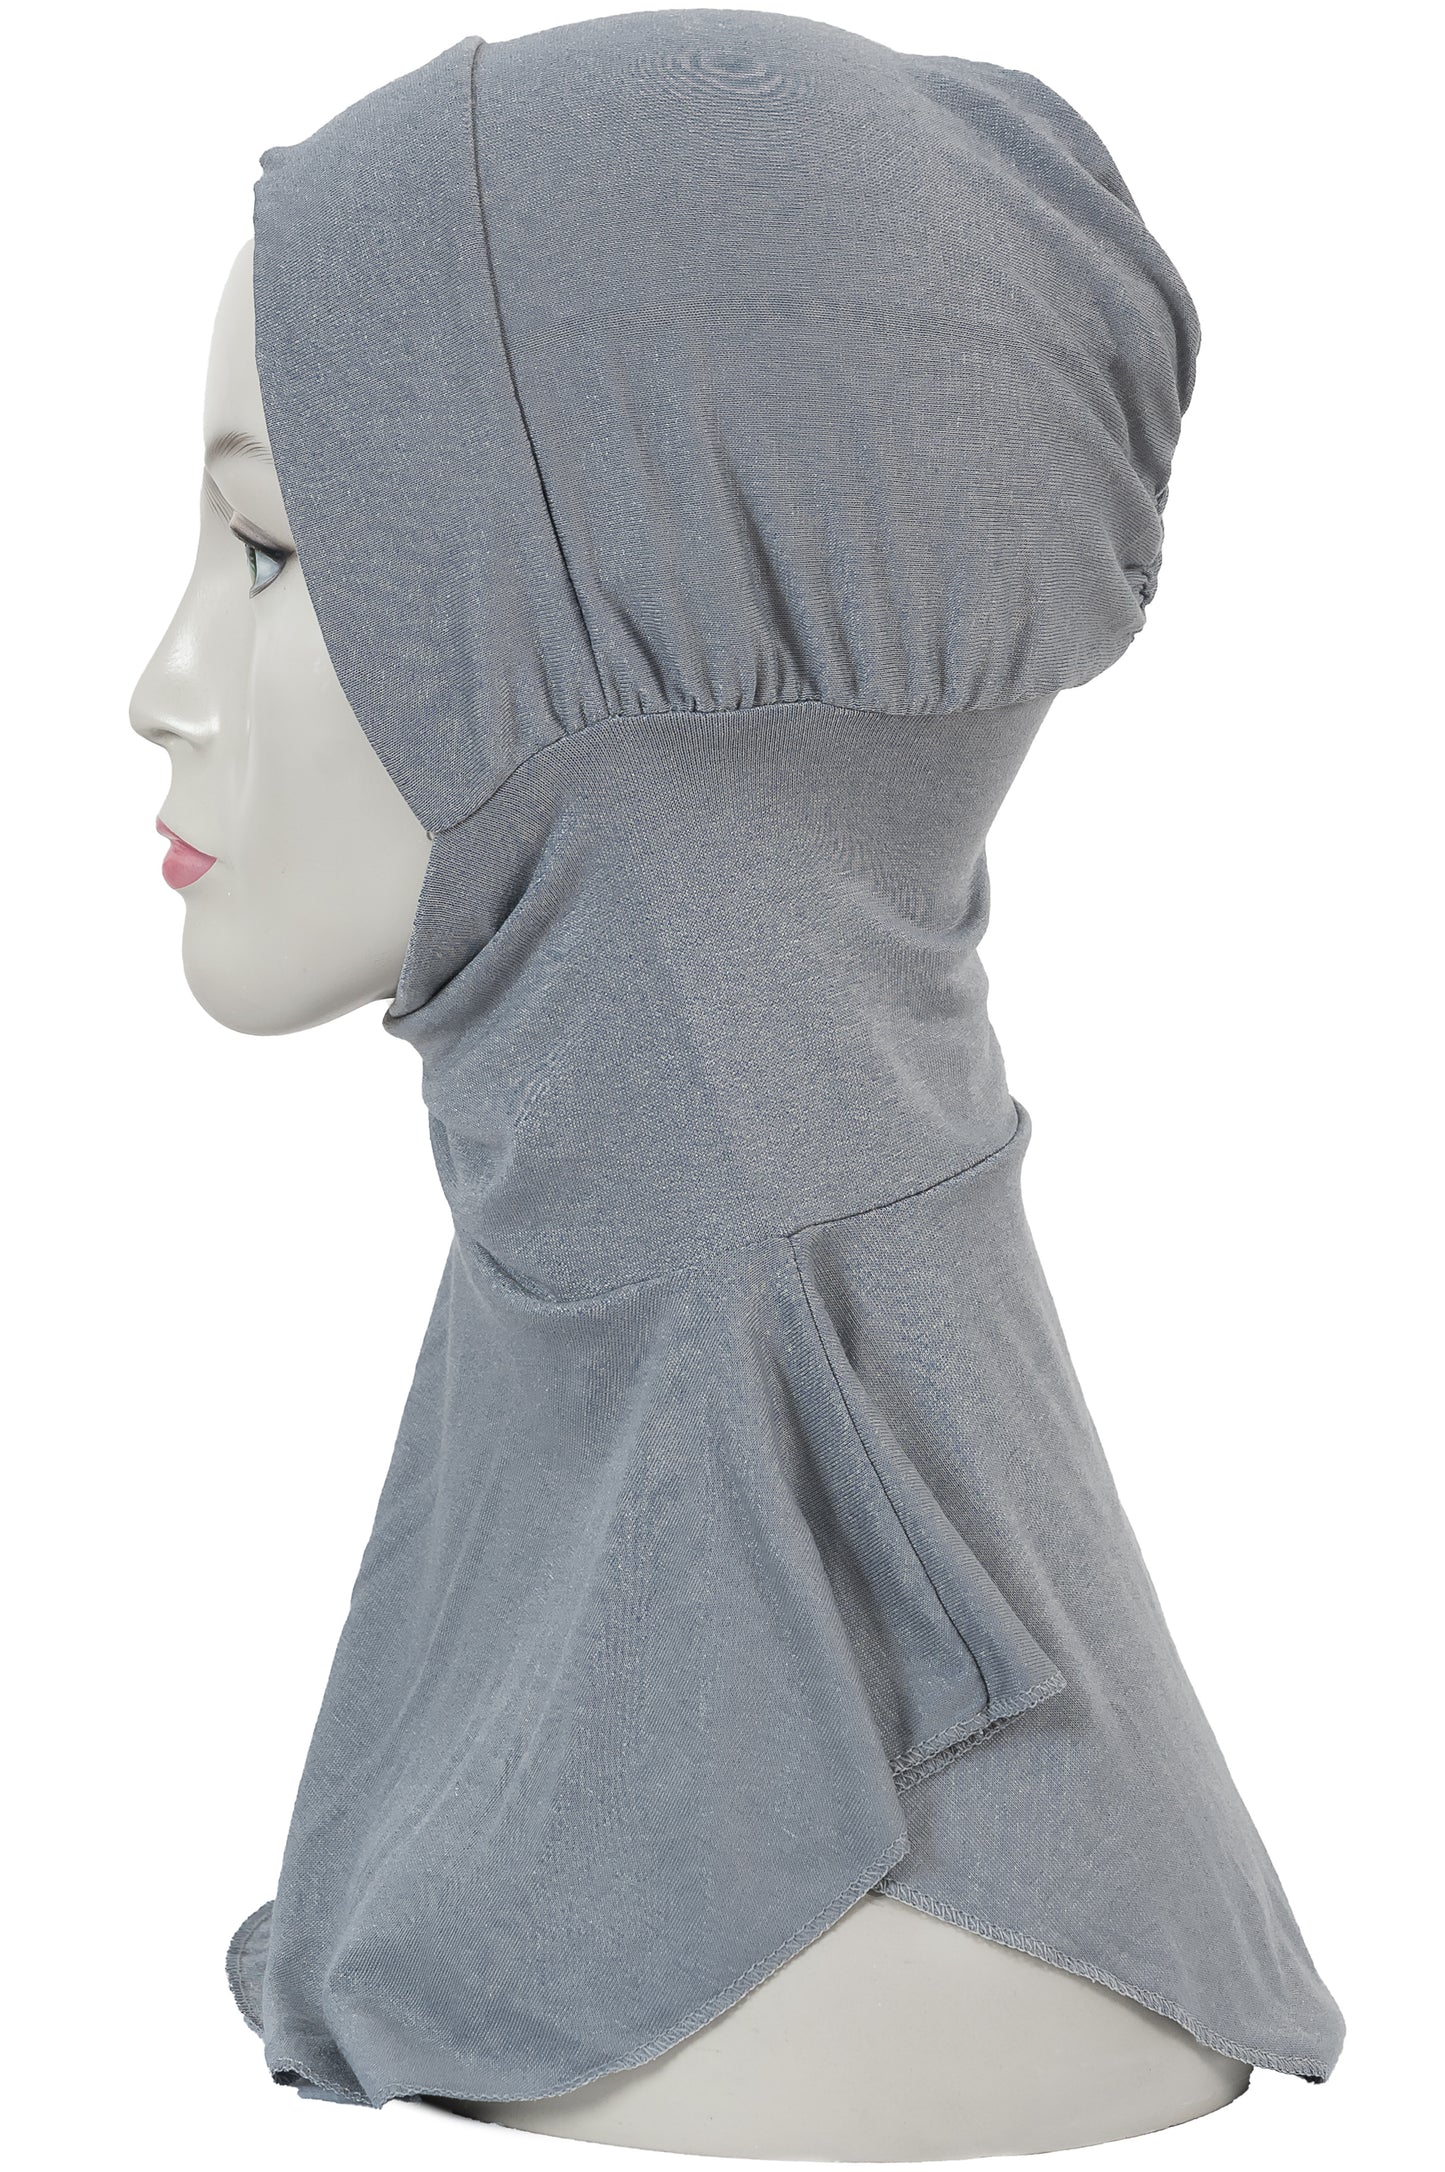 New- Ninja Cotton Cap in Grey